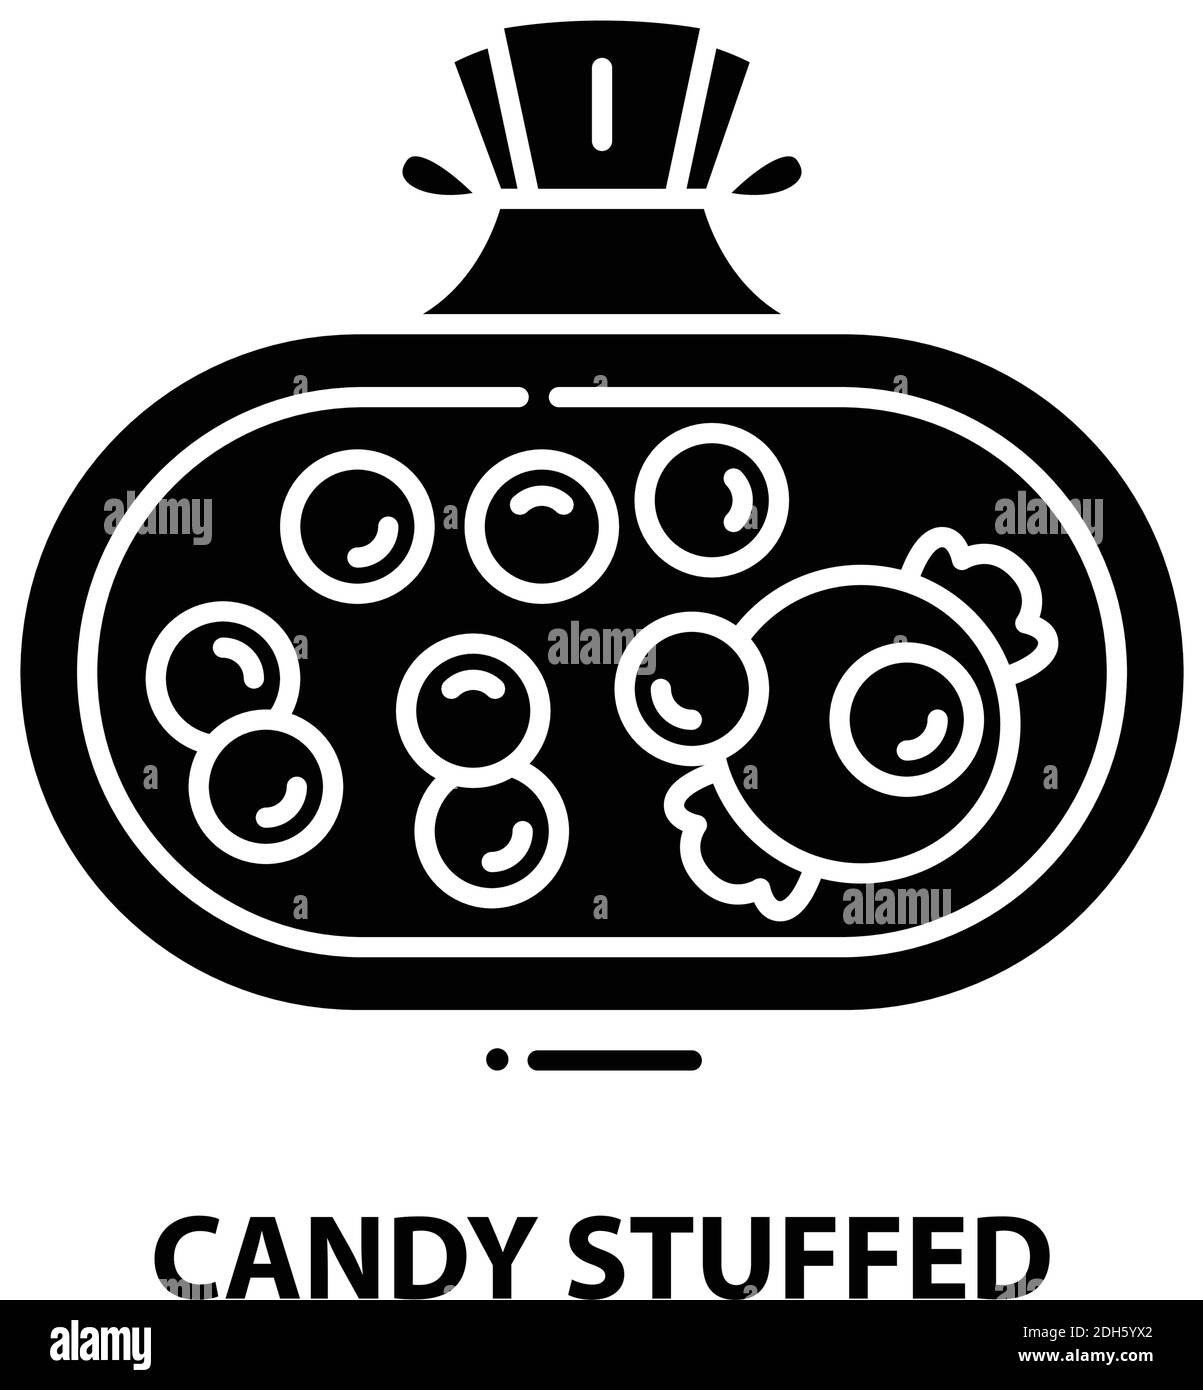 icona farcito caramella, segno vettoriale nero con tratti modificabili, illustrazione concettuale Illustrazione Vettoriale